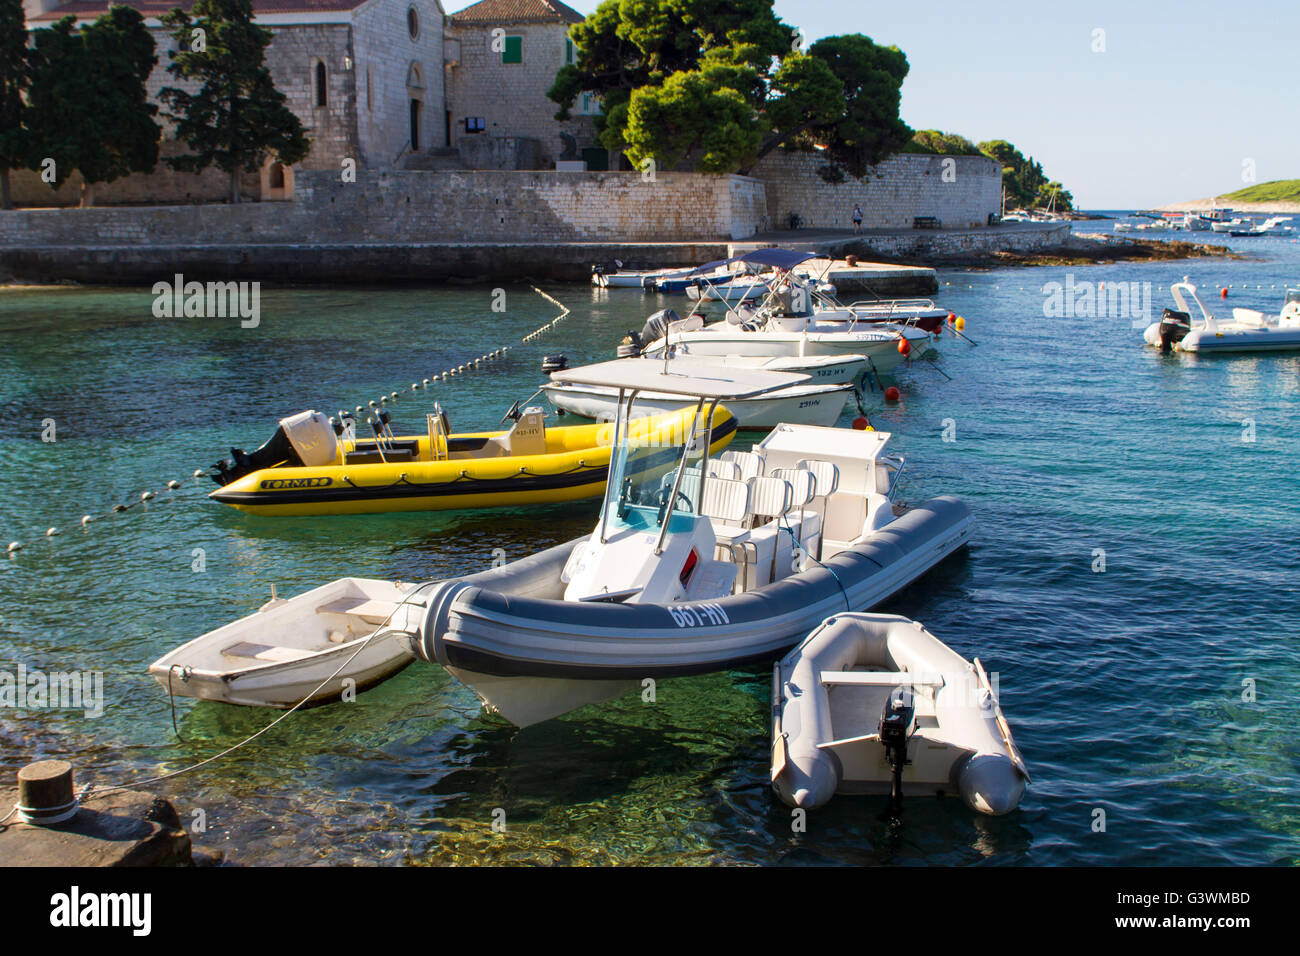 HVAR, CROACIA - Julio 15, 2015: Barcos en la isla de Hvar en Croacia. Hvar es un popular destino turístico en el mar Adriático, Croacia Foto de stock